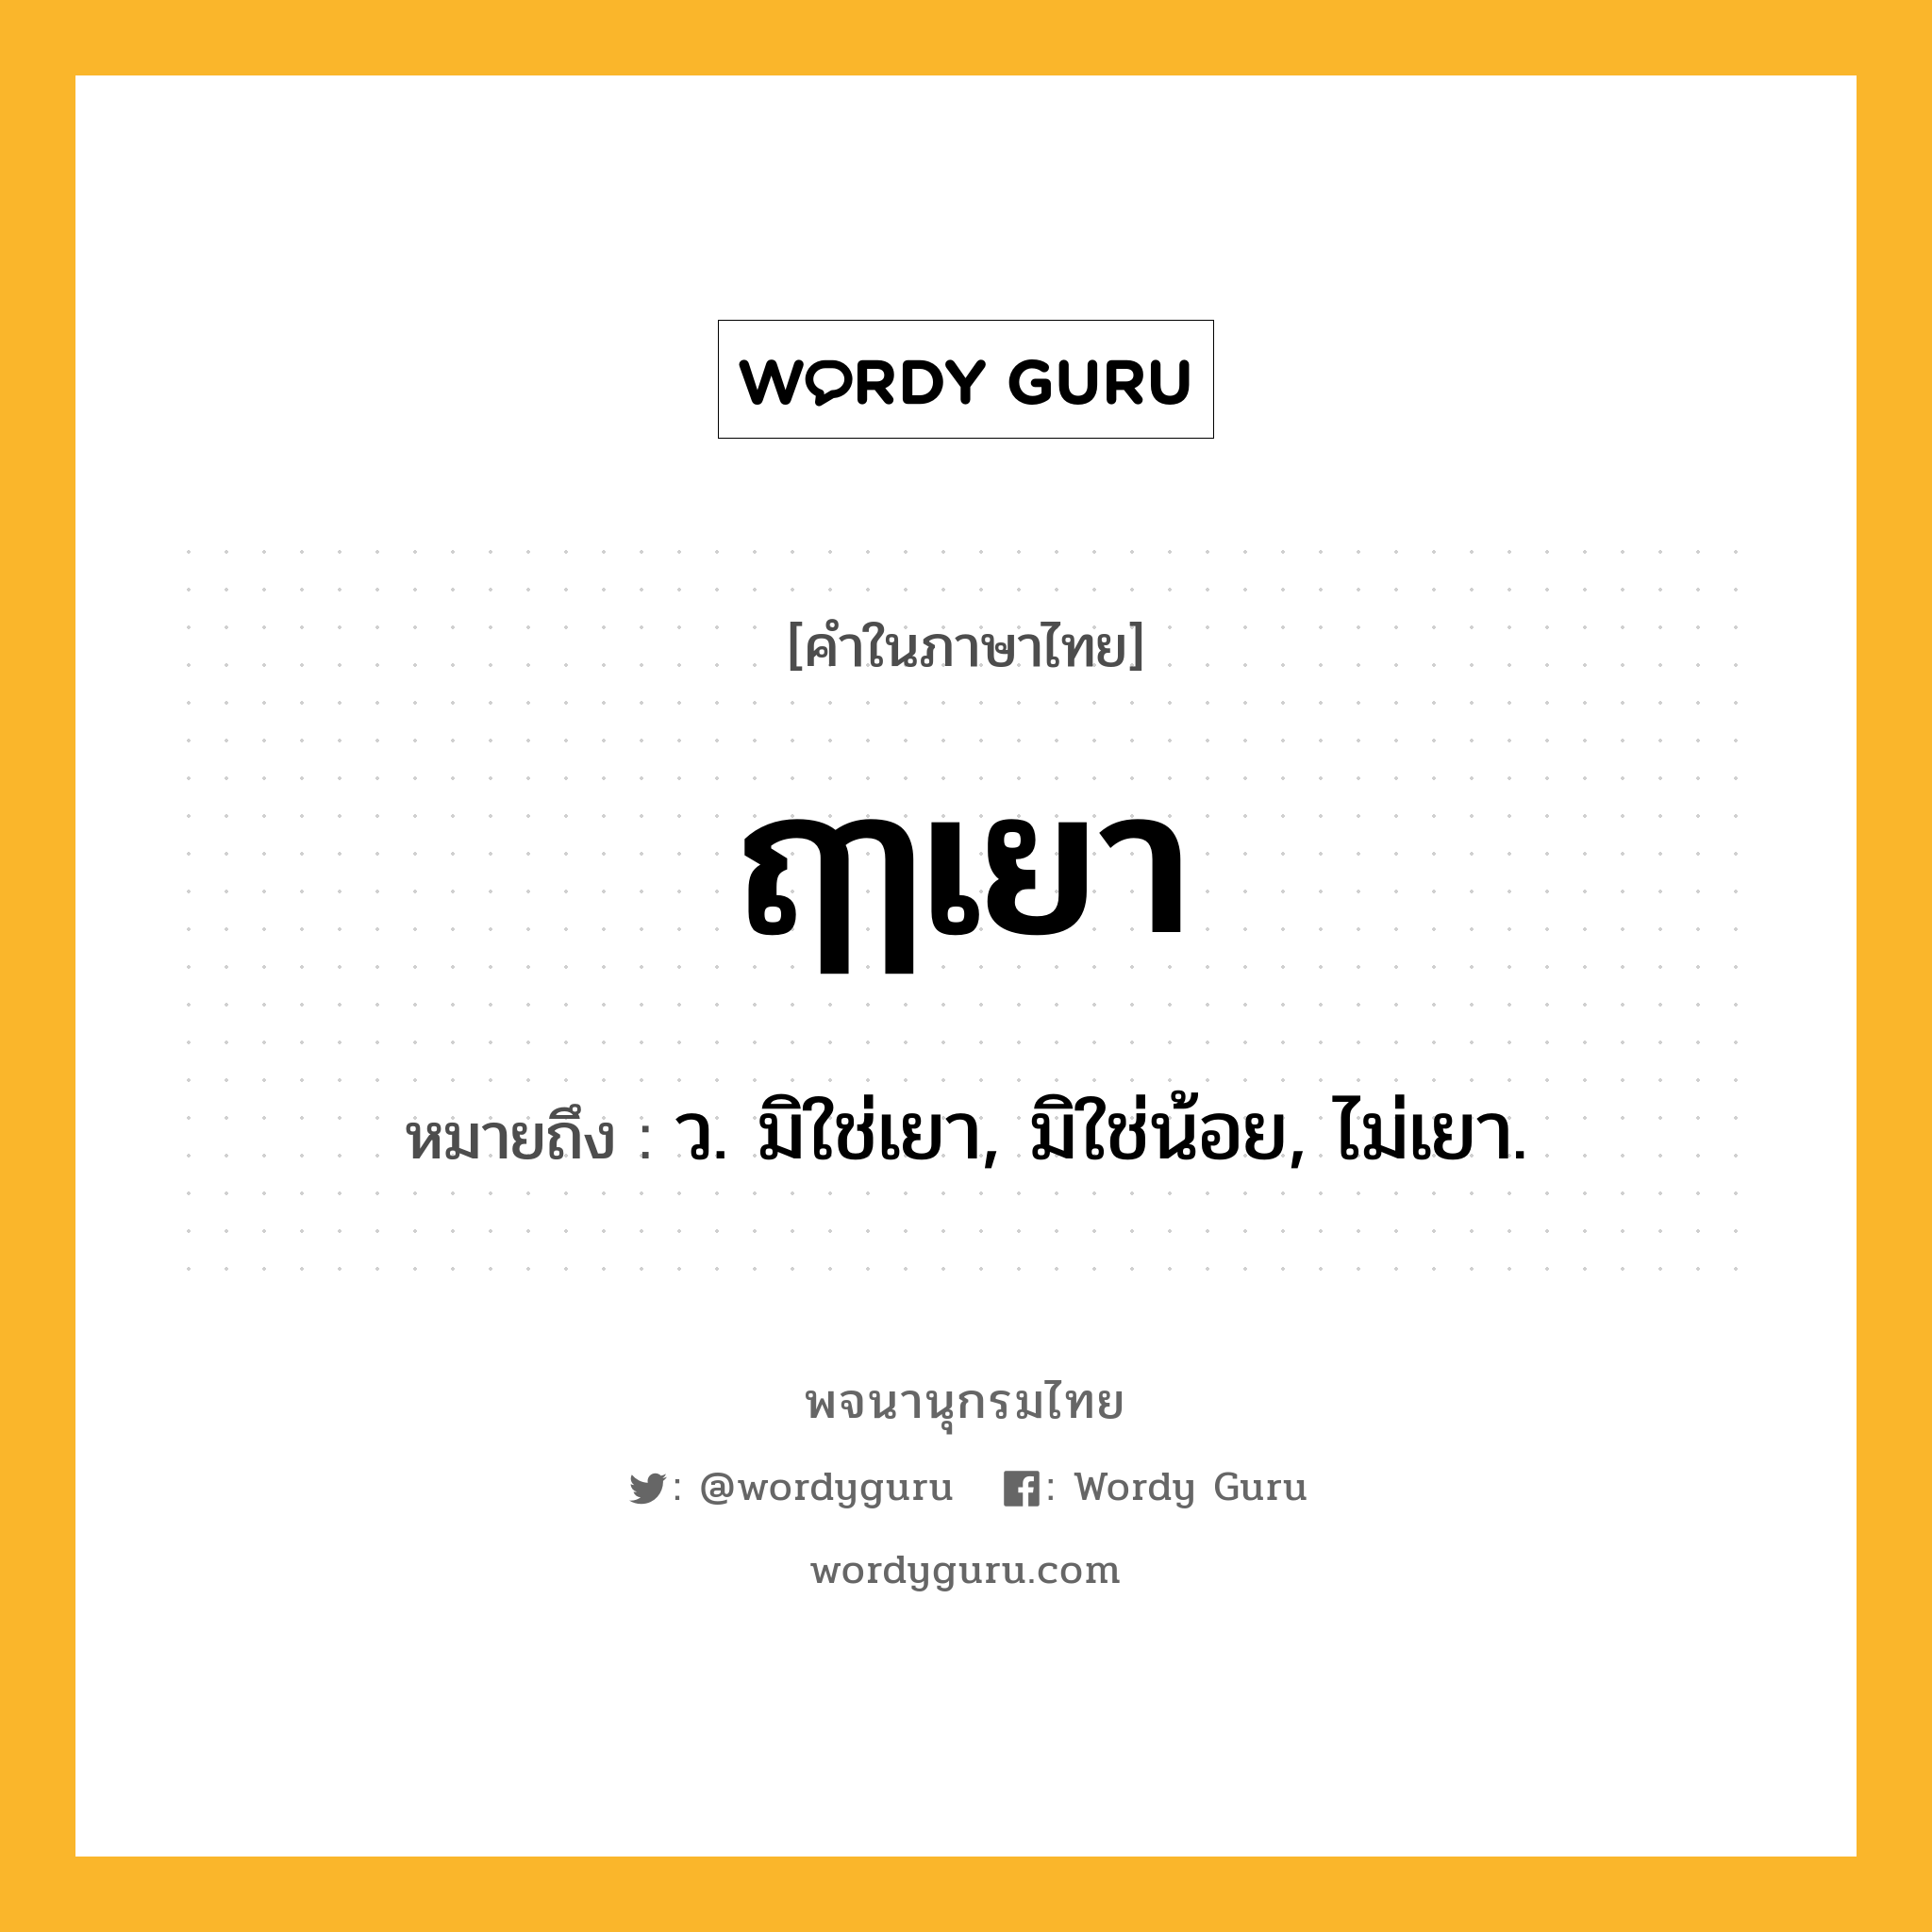 ฤๅเยา หมายถึงอะไร?, คำในภาษาไทย ฤๅเยา หมายถึง ว. มิใช่เยา, มิใช่น้อย, ไม่เยา.